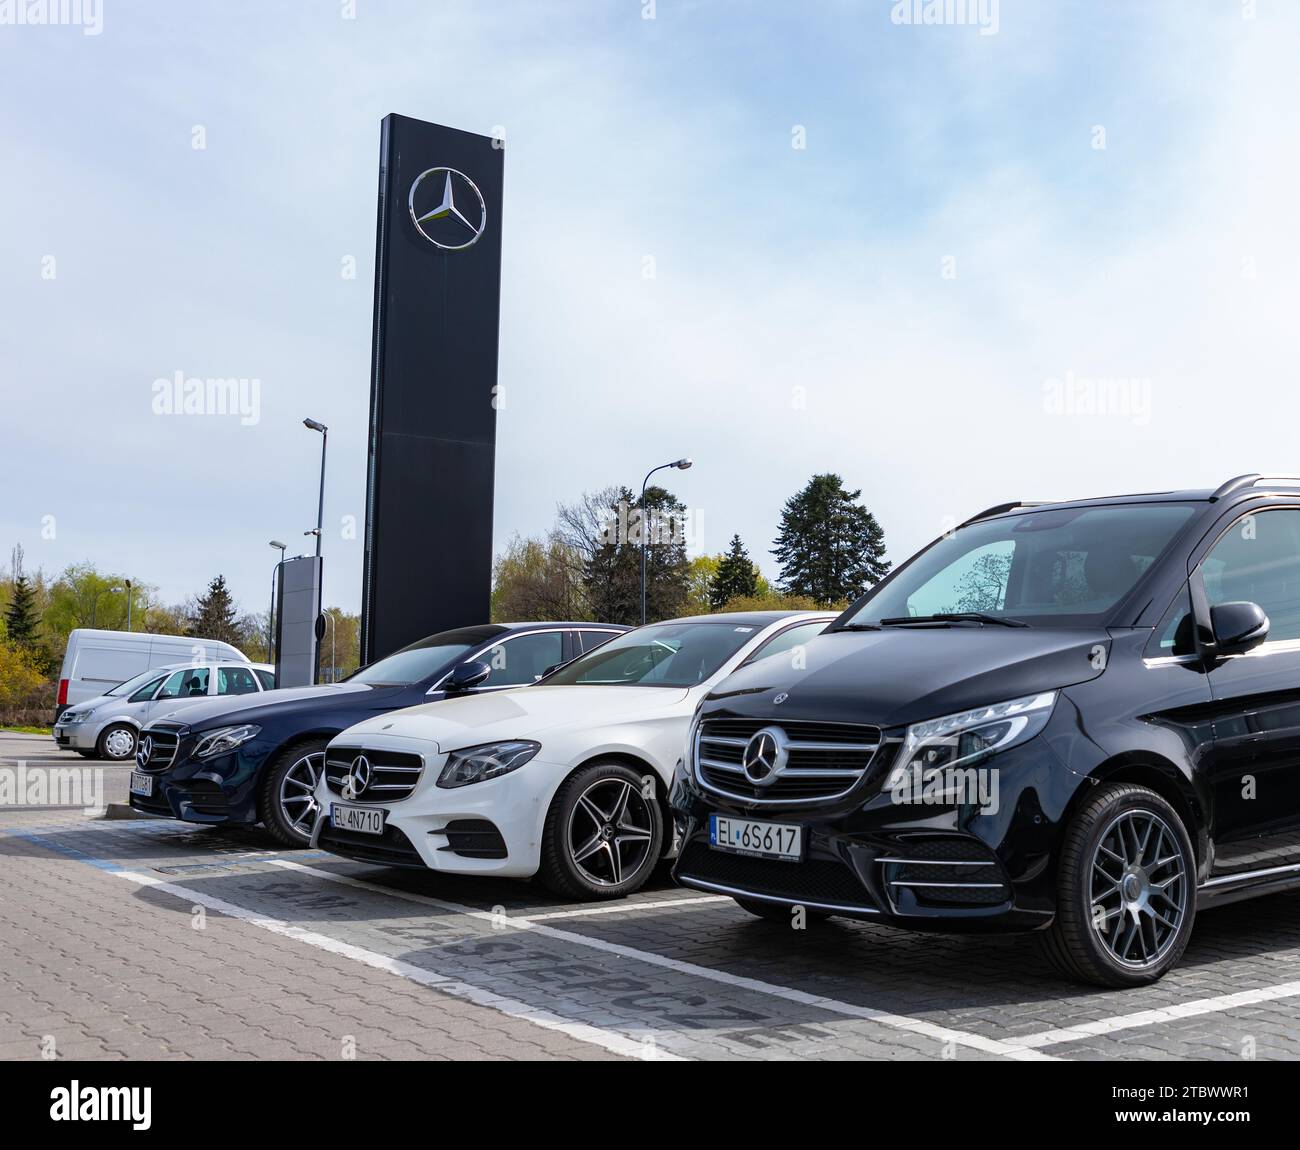 Une photo de plusieurs véhicules chez un concessionnaire Mercedes Benz, en Pologne Banque D'Images